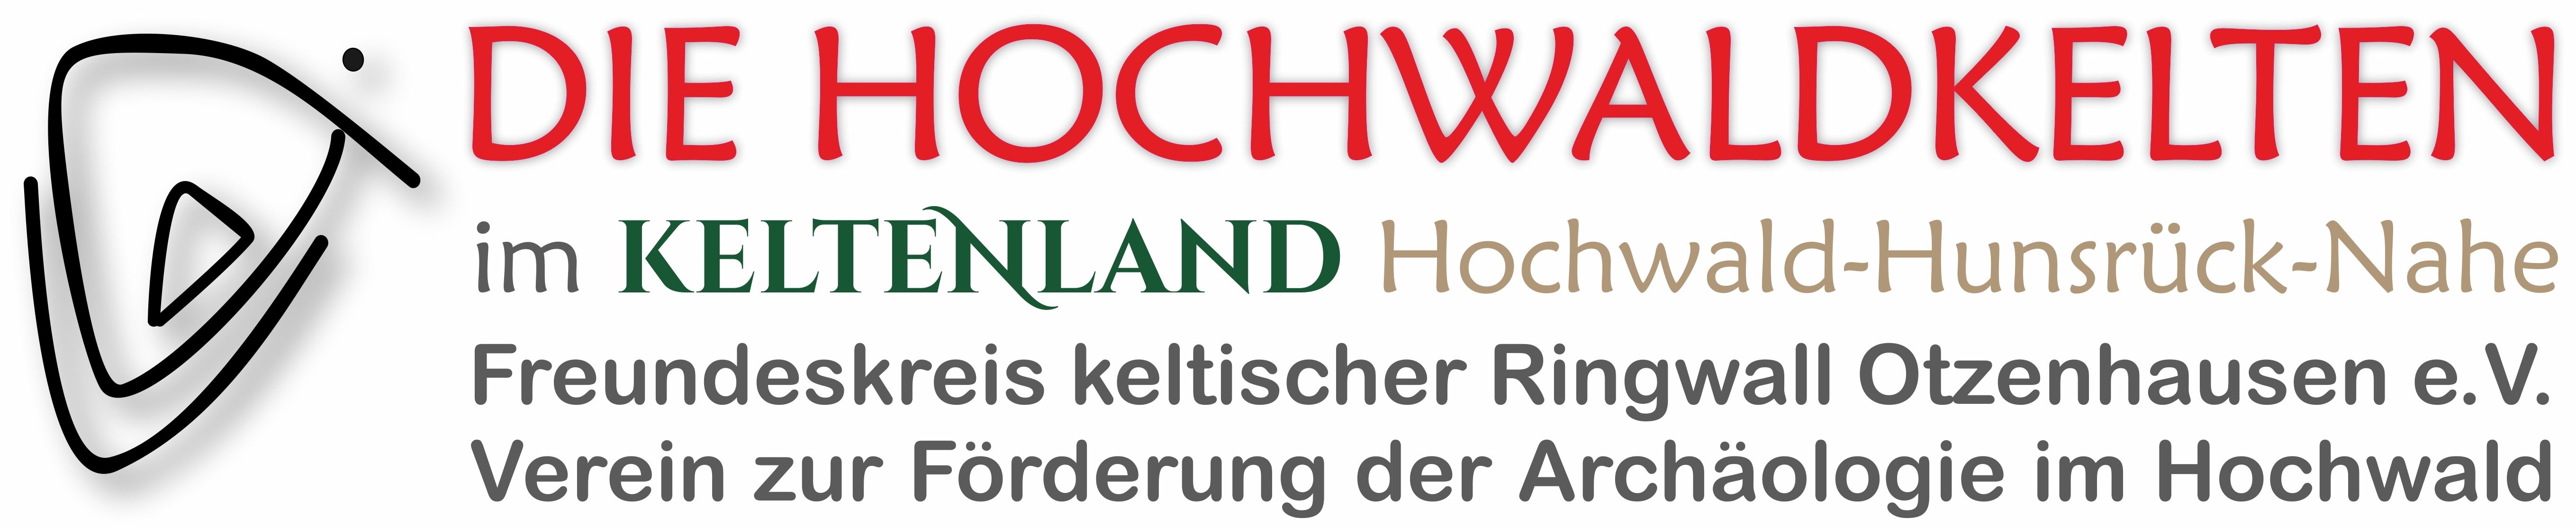 Profilbild des Vereins 'Freundeskreis keltischer Ringwall Otzenhausen'